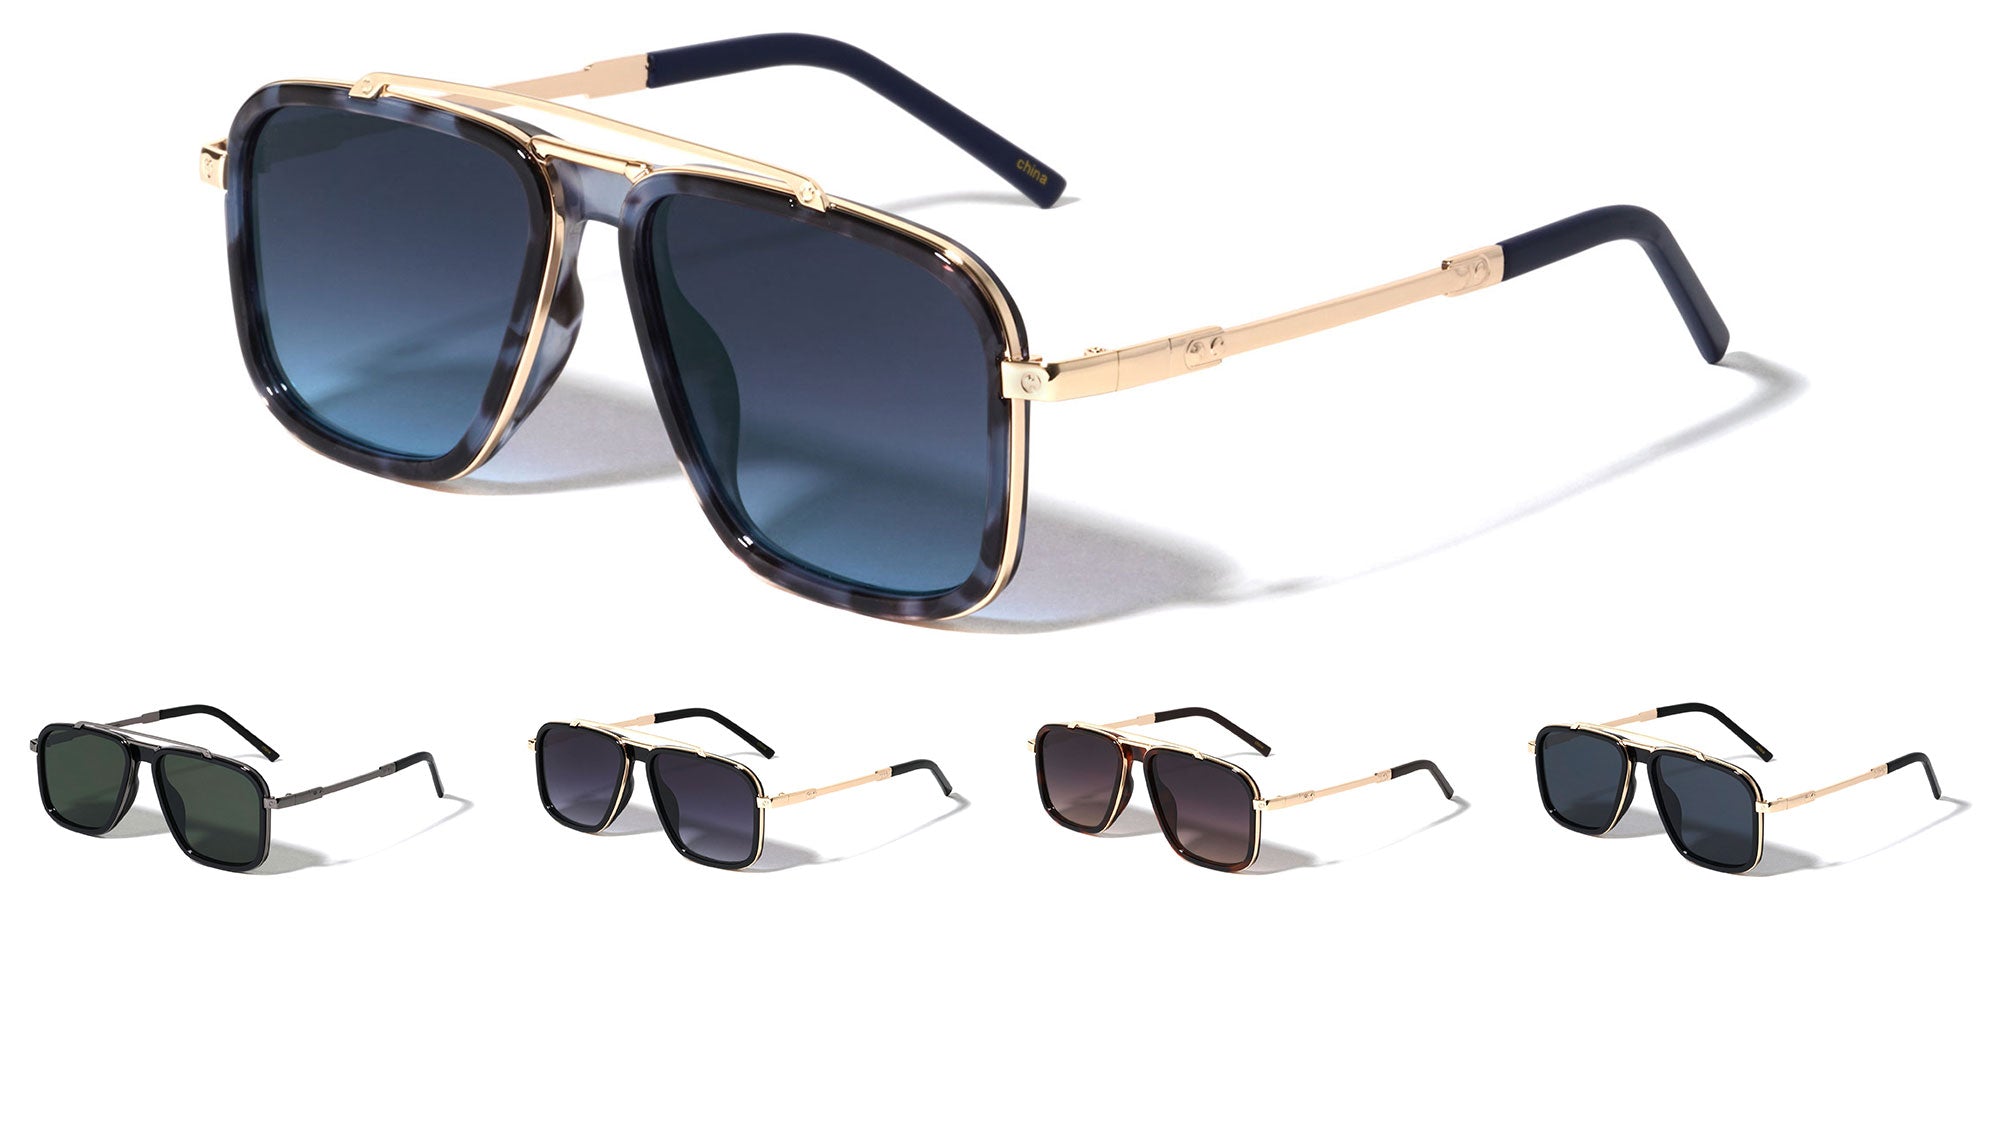 Buy Square Sunglasses For Men And Women Online | Lenskart